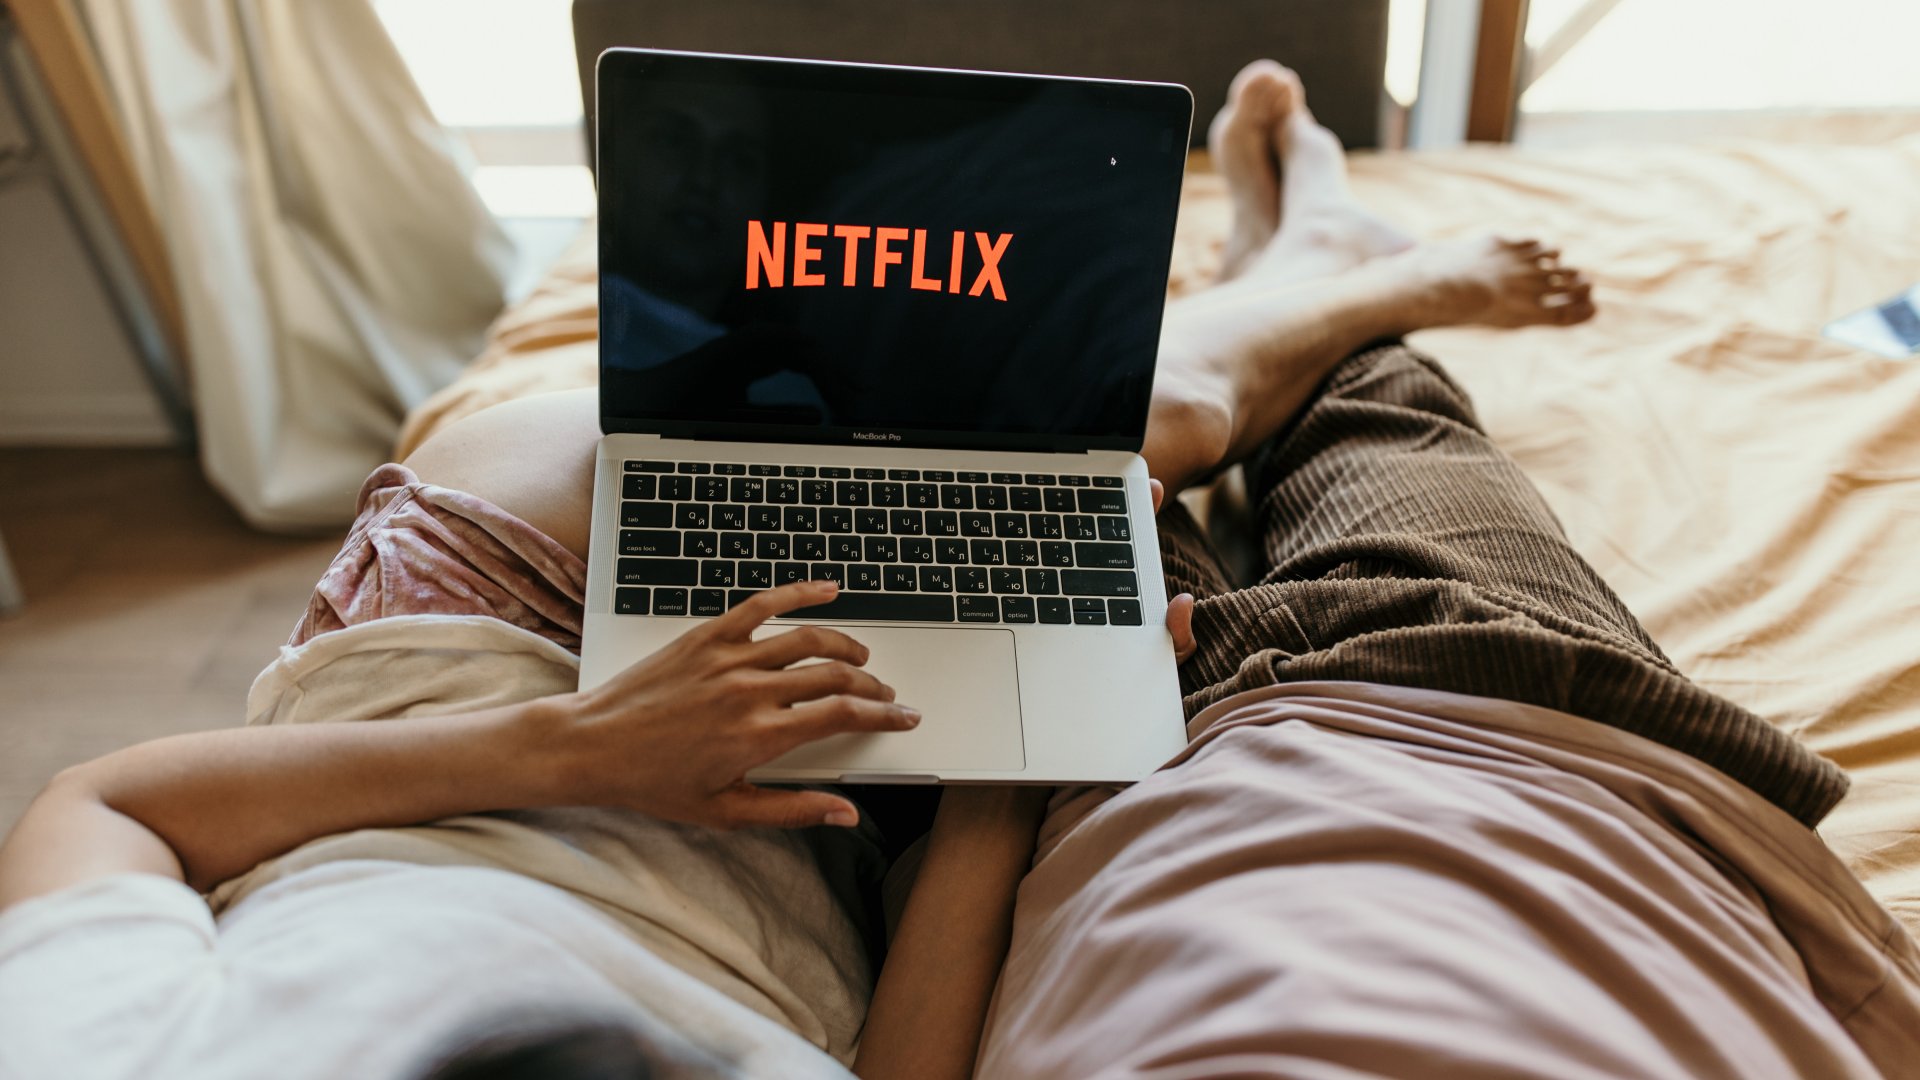 Ágyban fekvő pár Netflixet néz egy laptopon